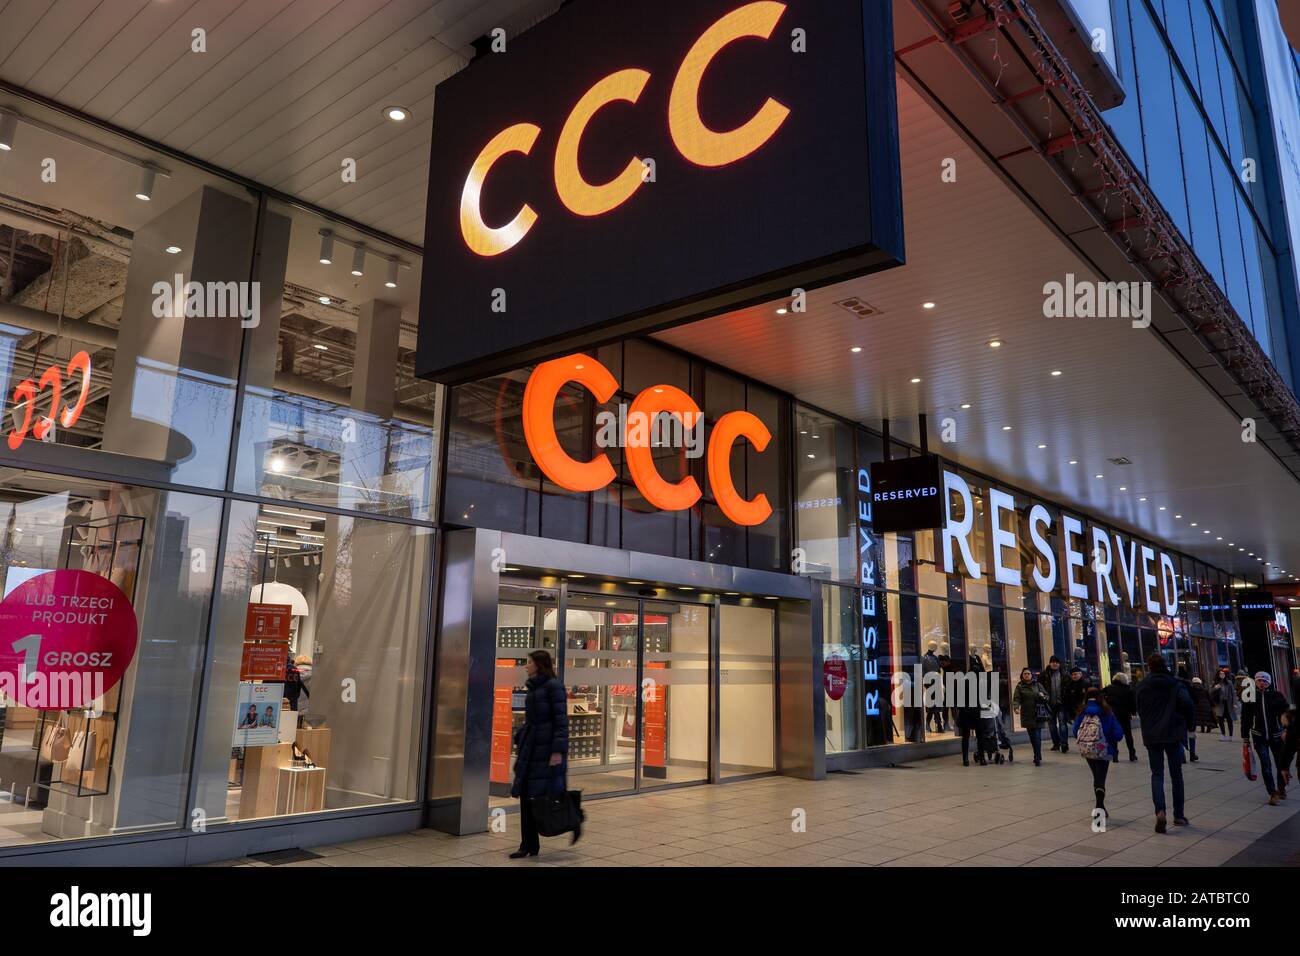 Ccc Schuhe Stockfotos und -bilder Kaufen - Alamy